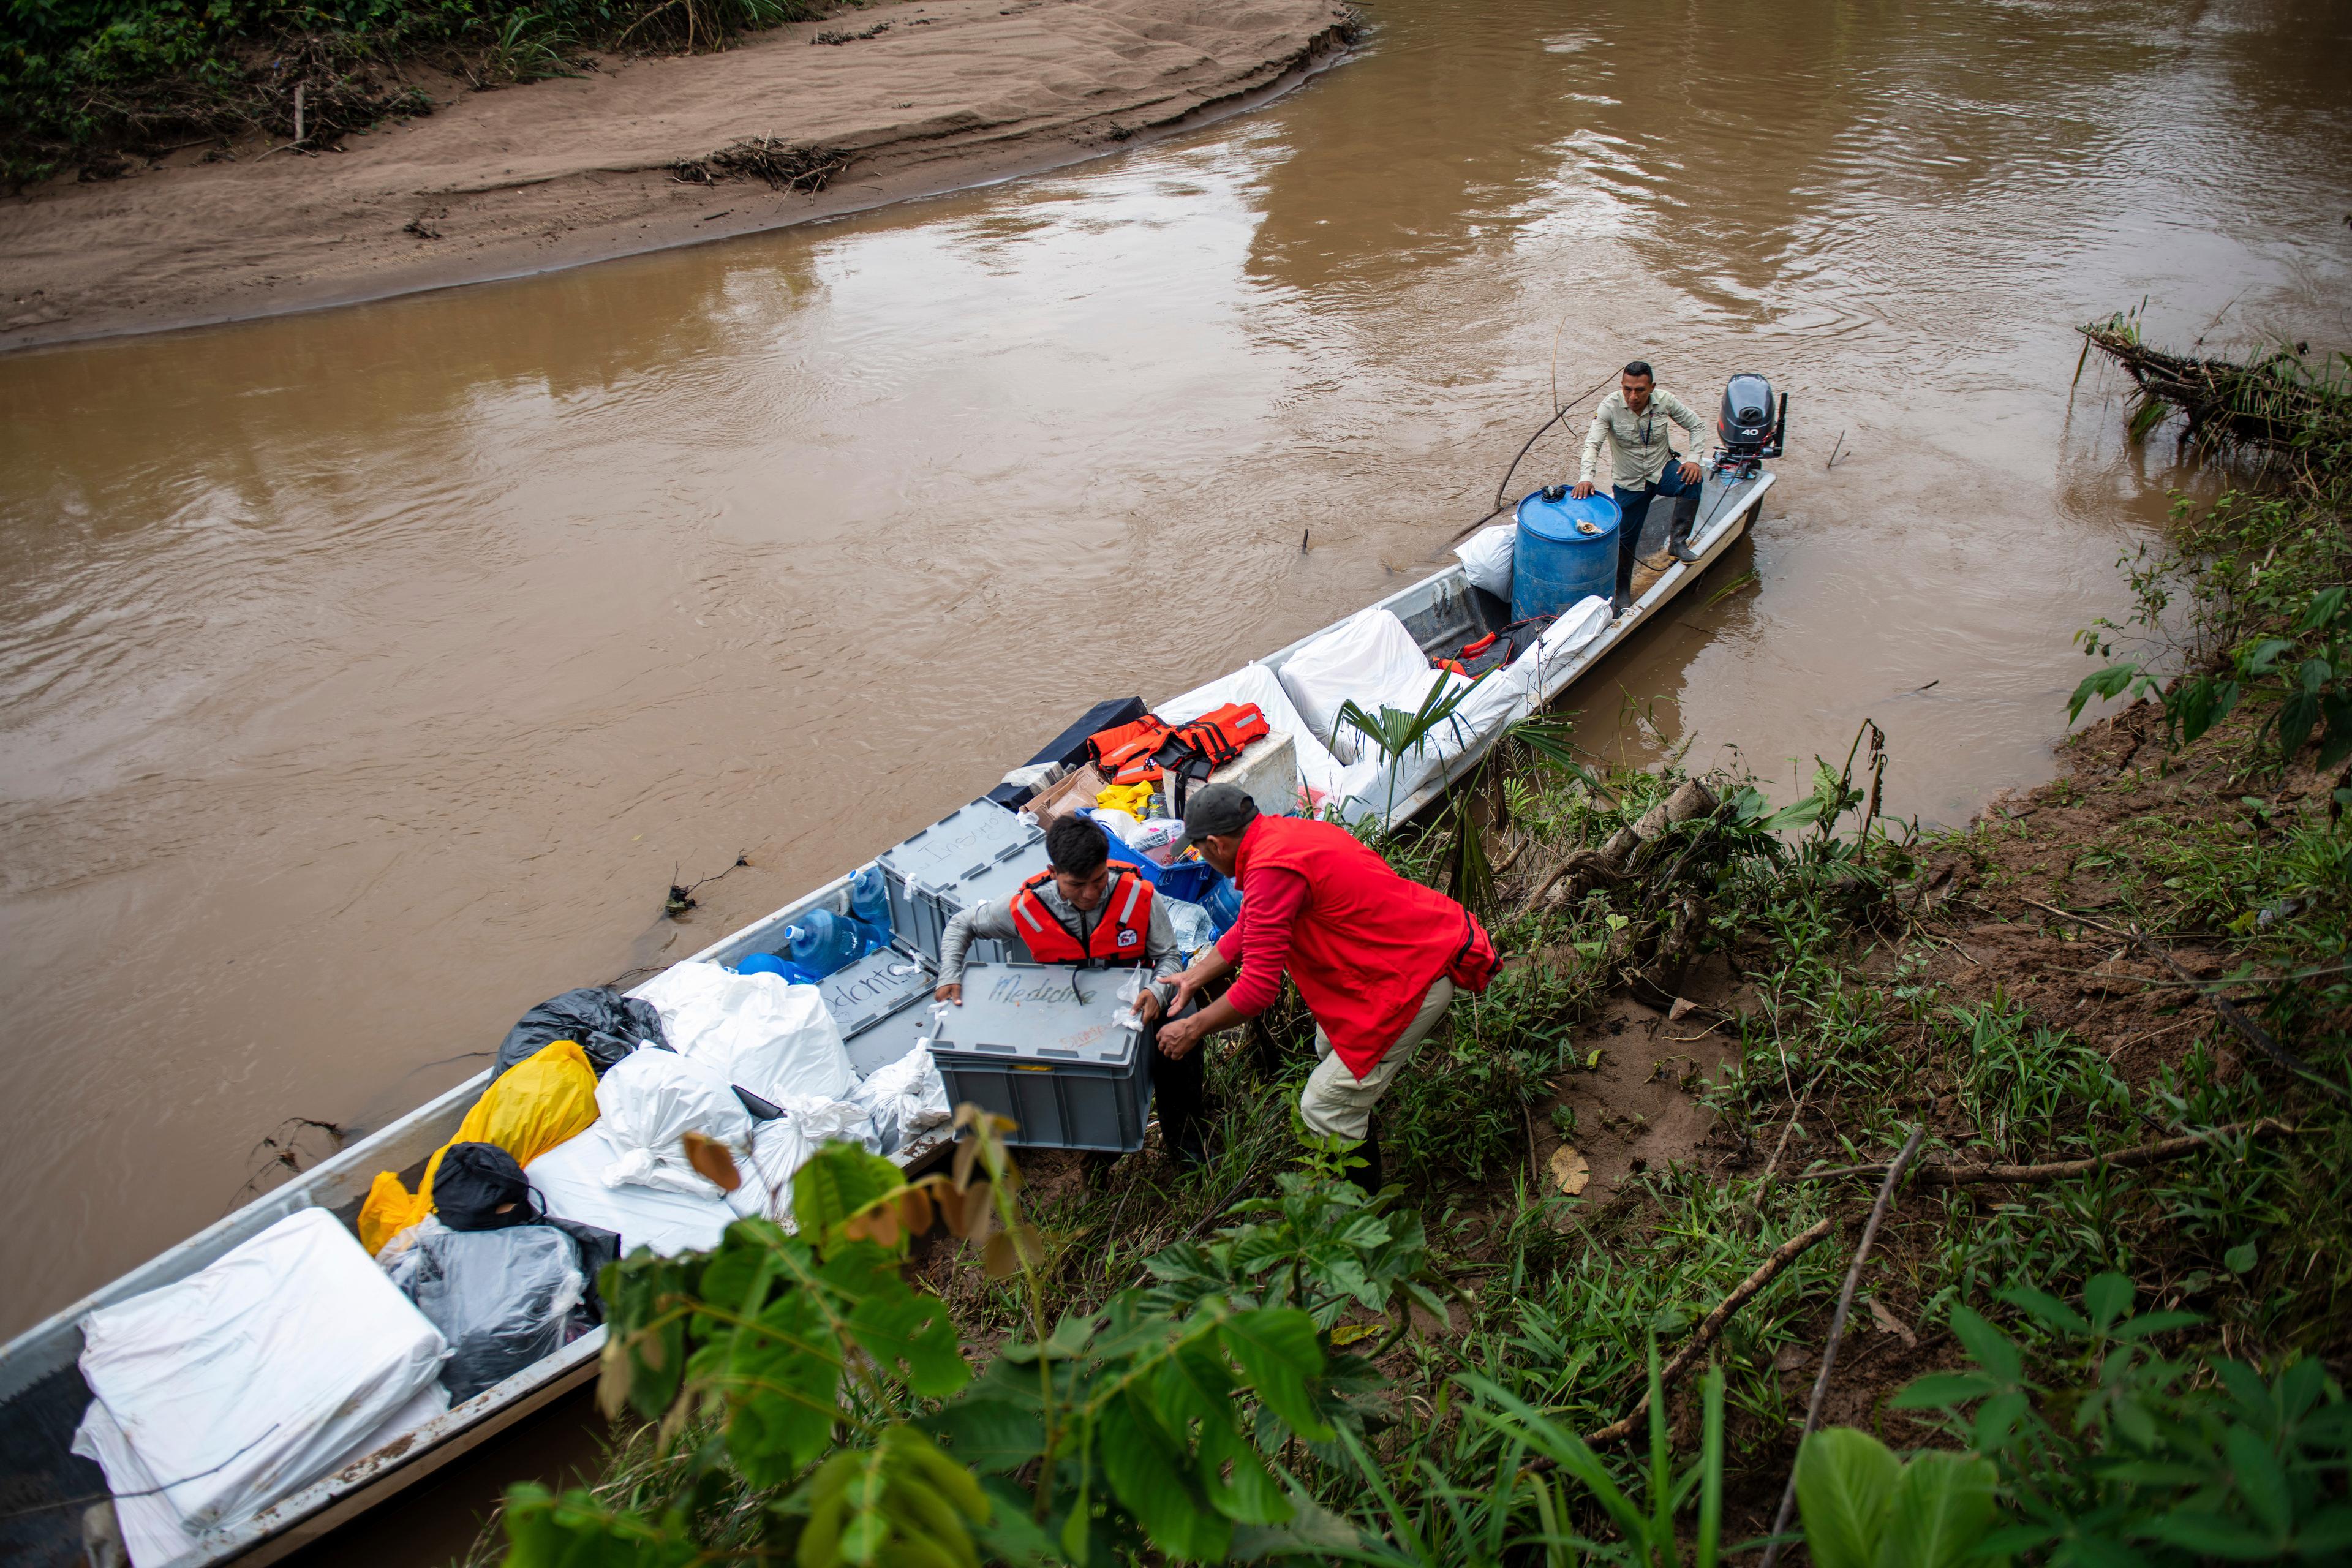 Alcune persone scaricano delle attrezzature da una semplice imbarcazione di legno attraccata in riva a un fiume.